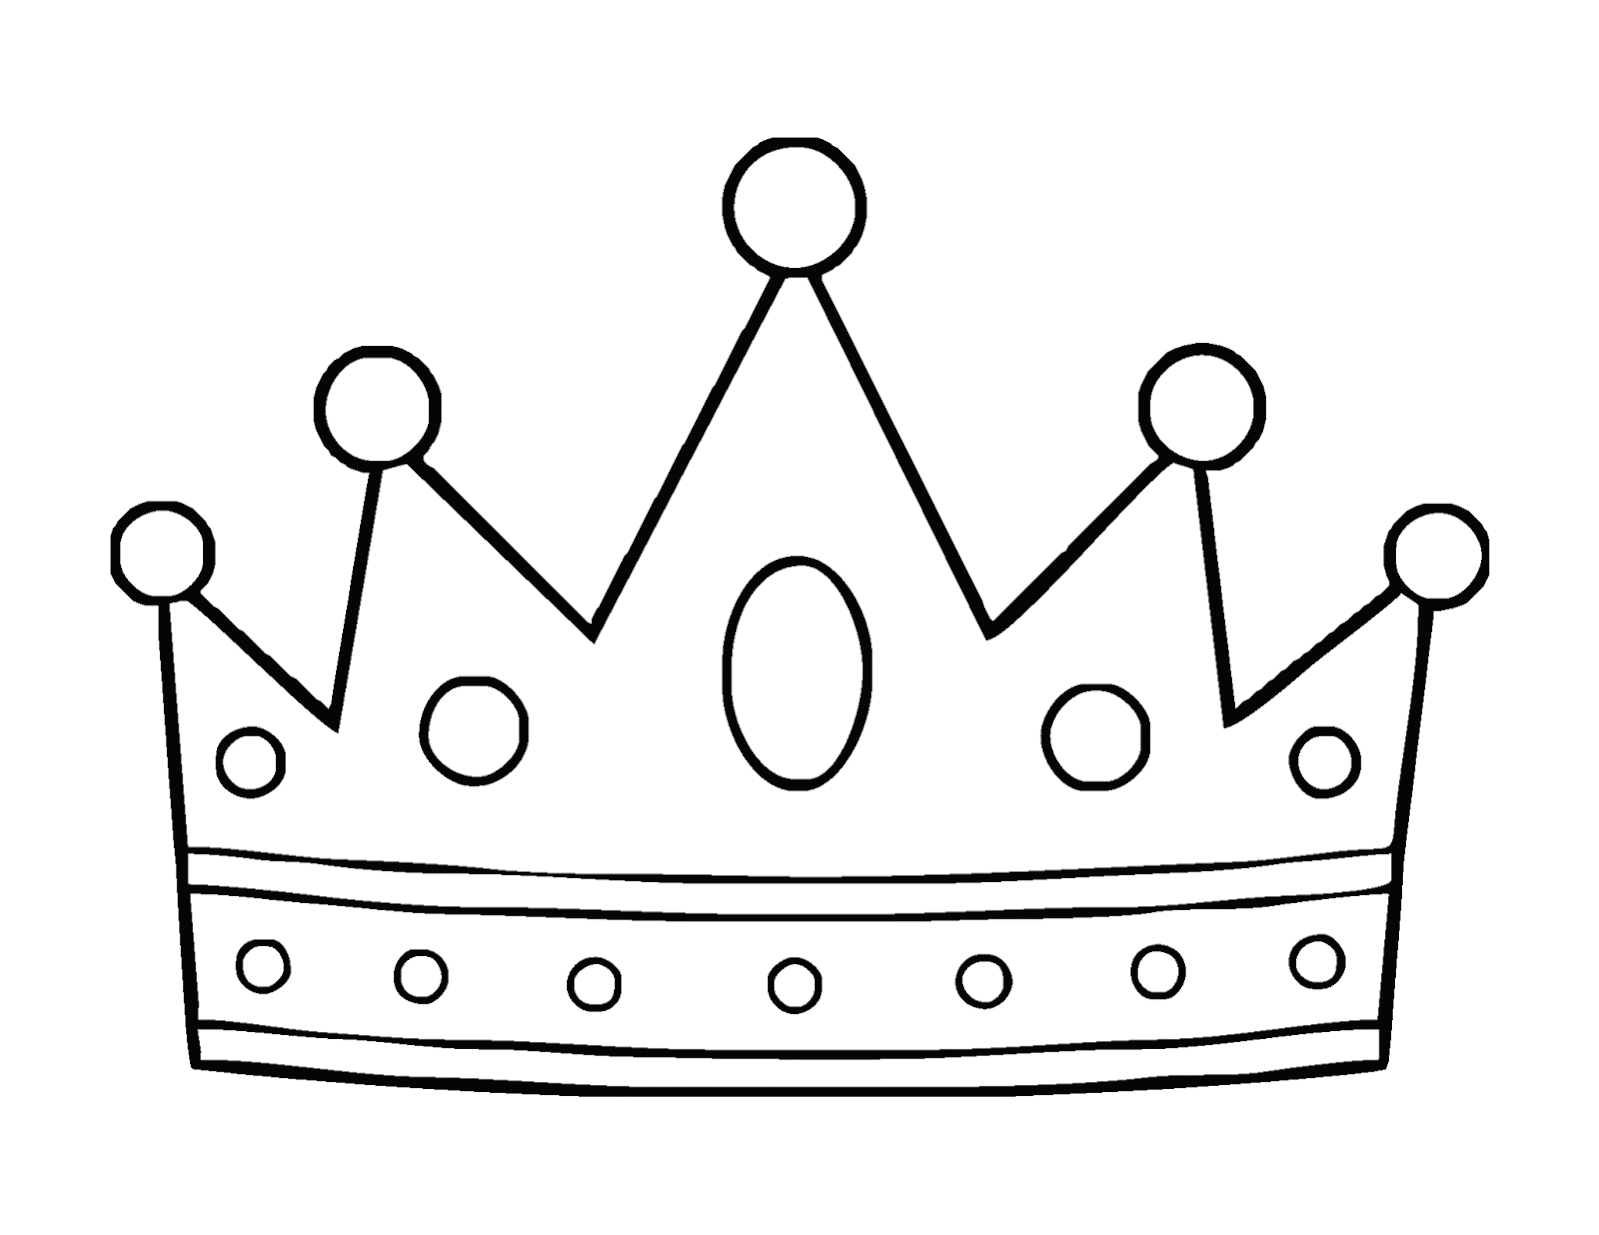 Mewarnai Gambar Mahkota Raja